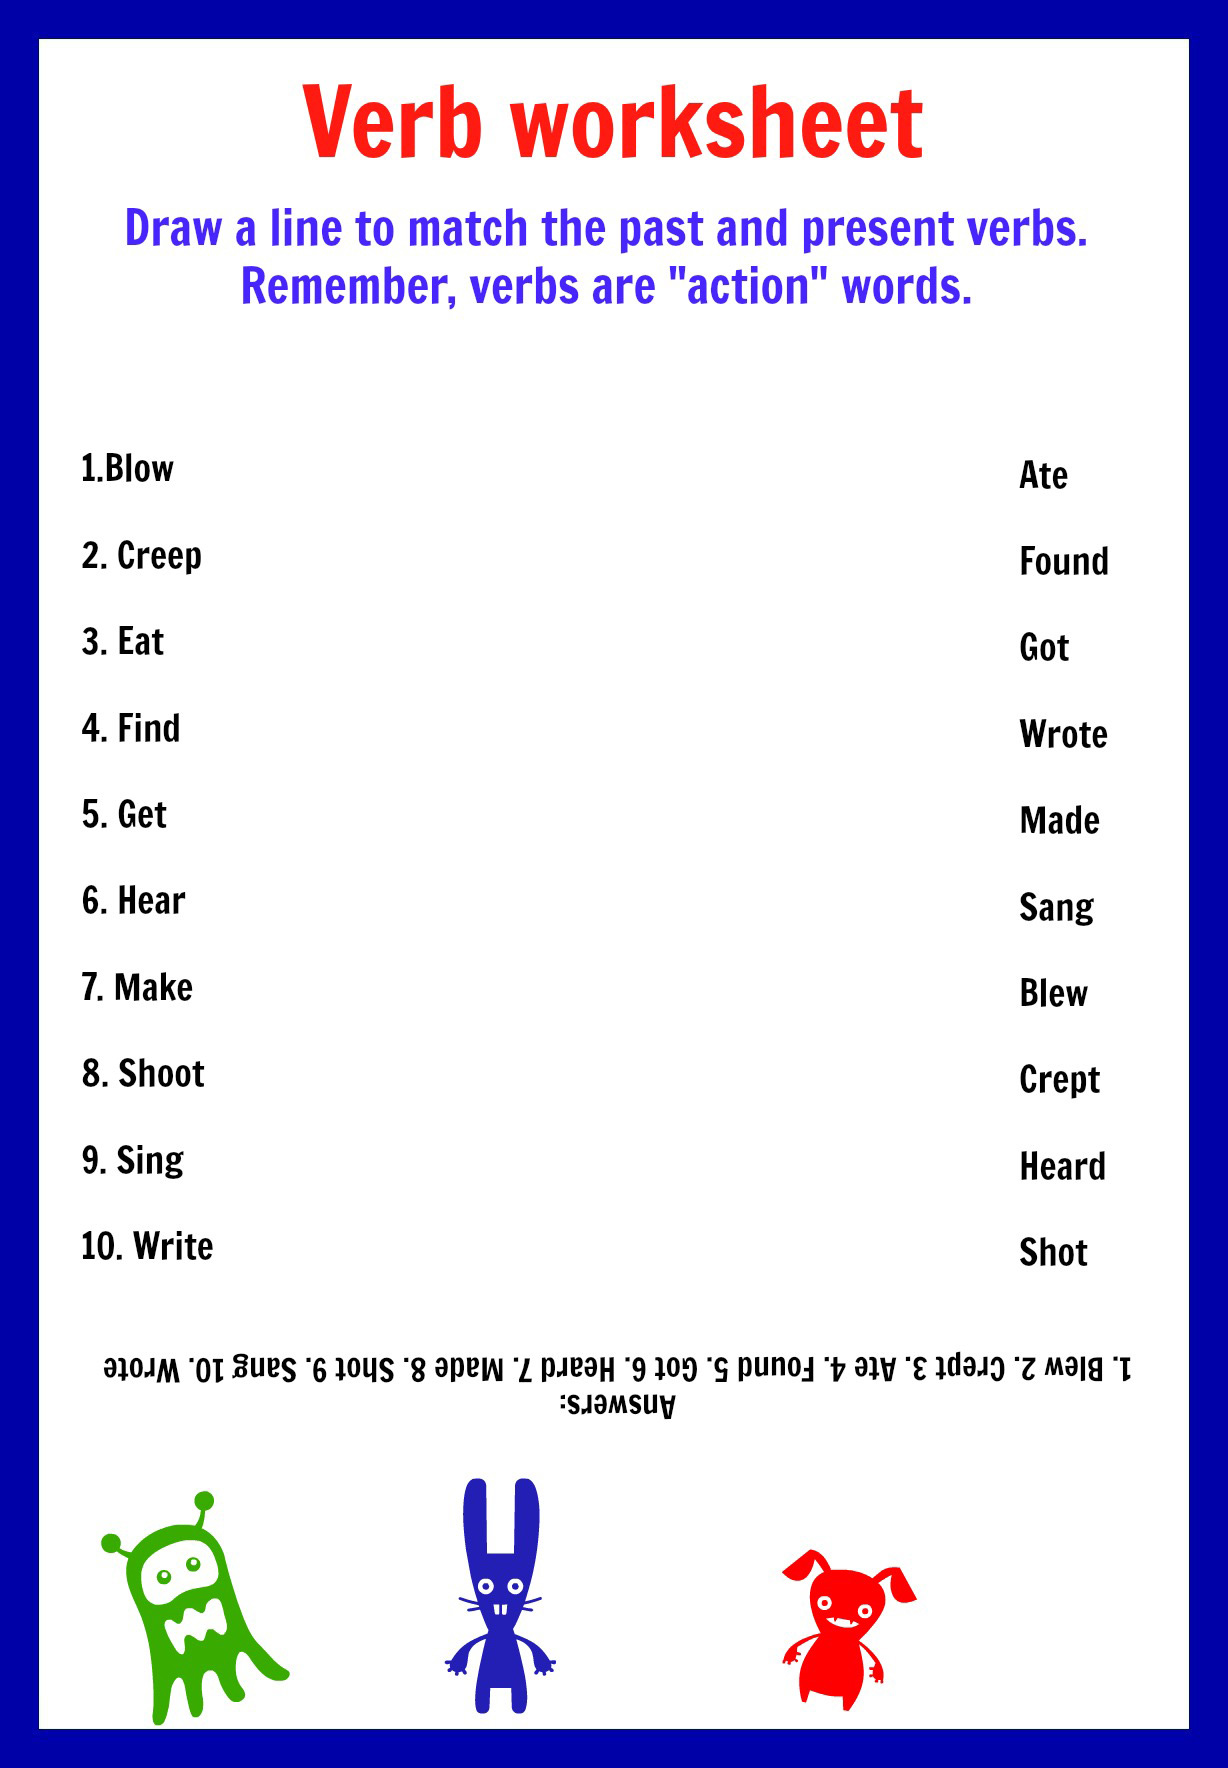 verbs-printable-worksheets